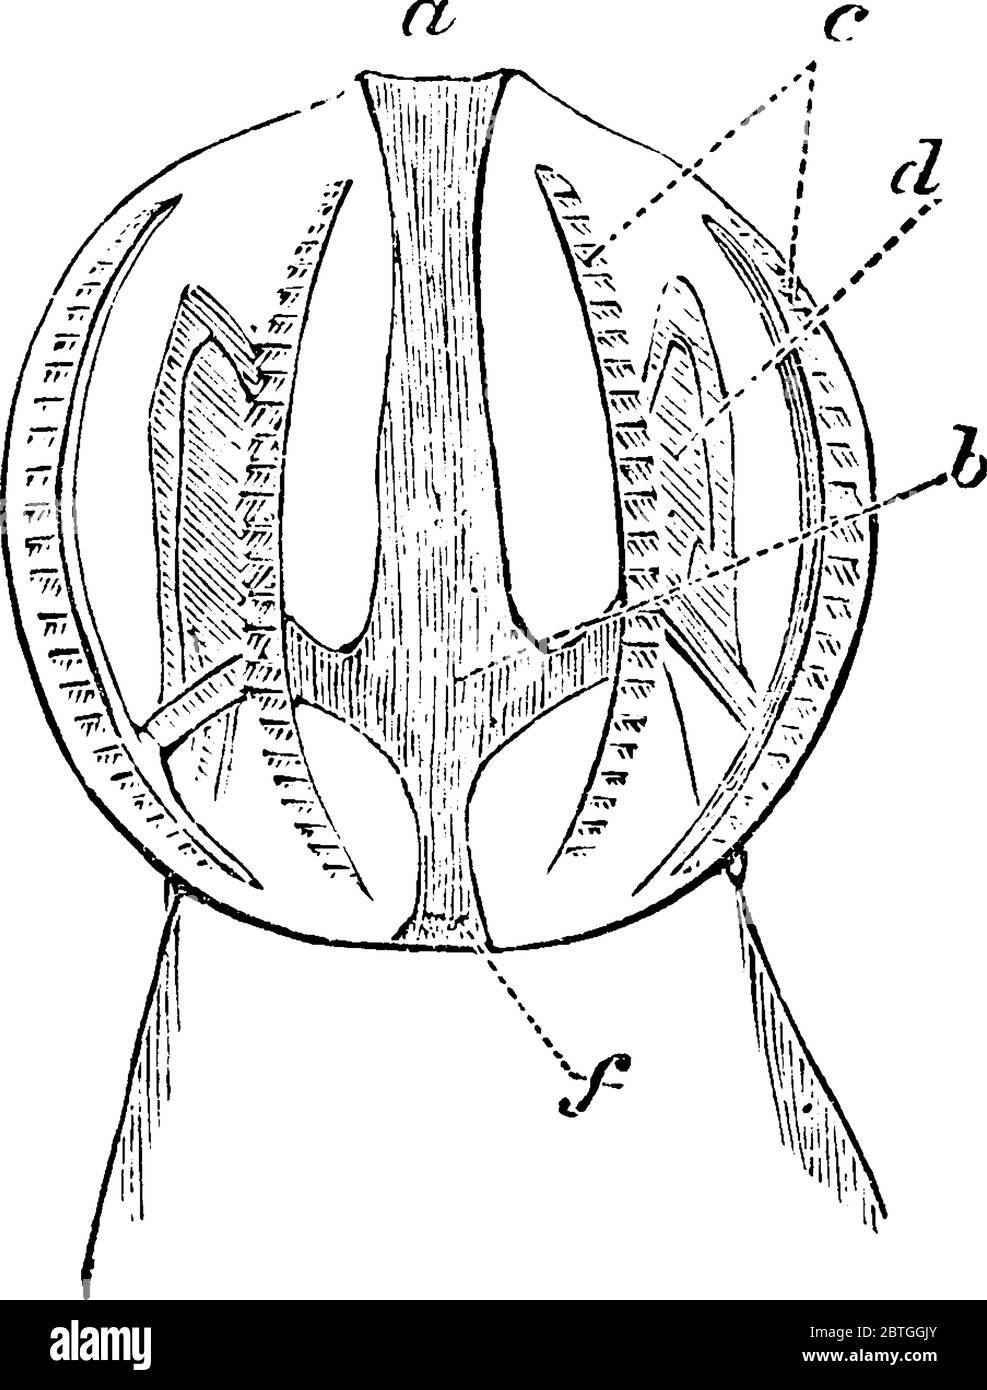 Le ctenobre est un invertébré aquatique du phylum Ctenophora, qui comprend les gelées en peigne. Ils nagent avec l'aide de cilia, dessin de ligne vintage Illustration de Vecteur